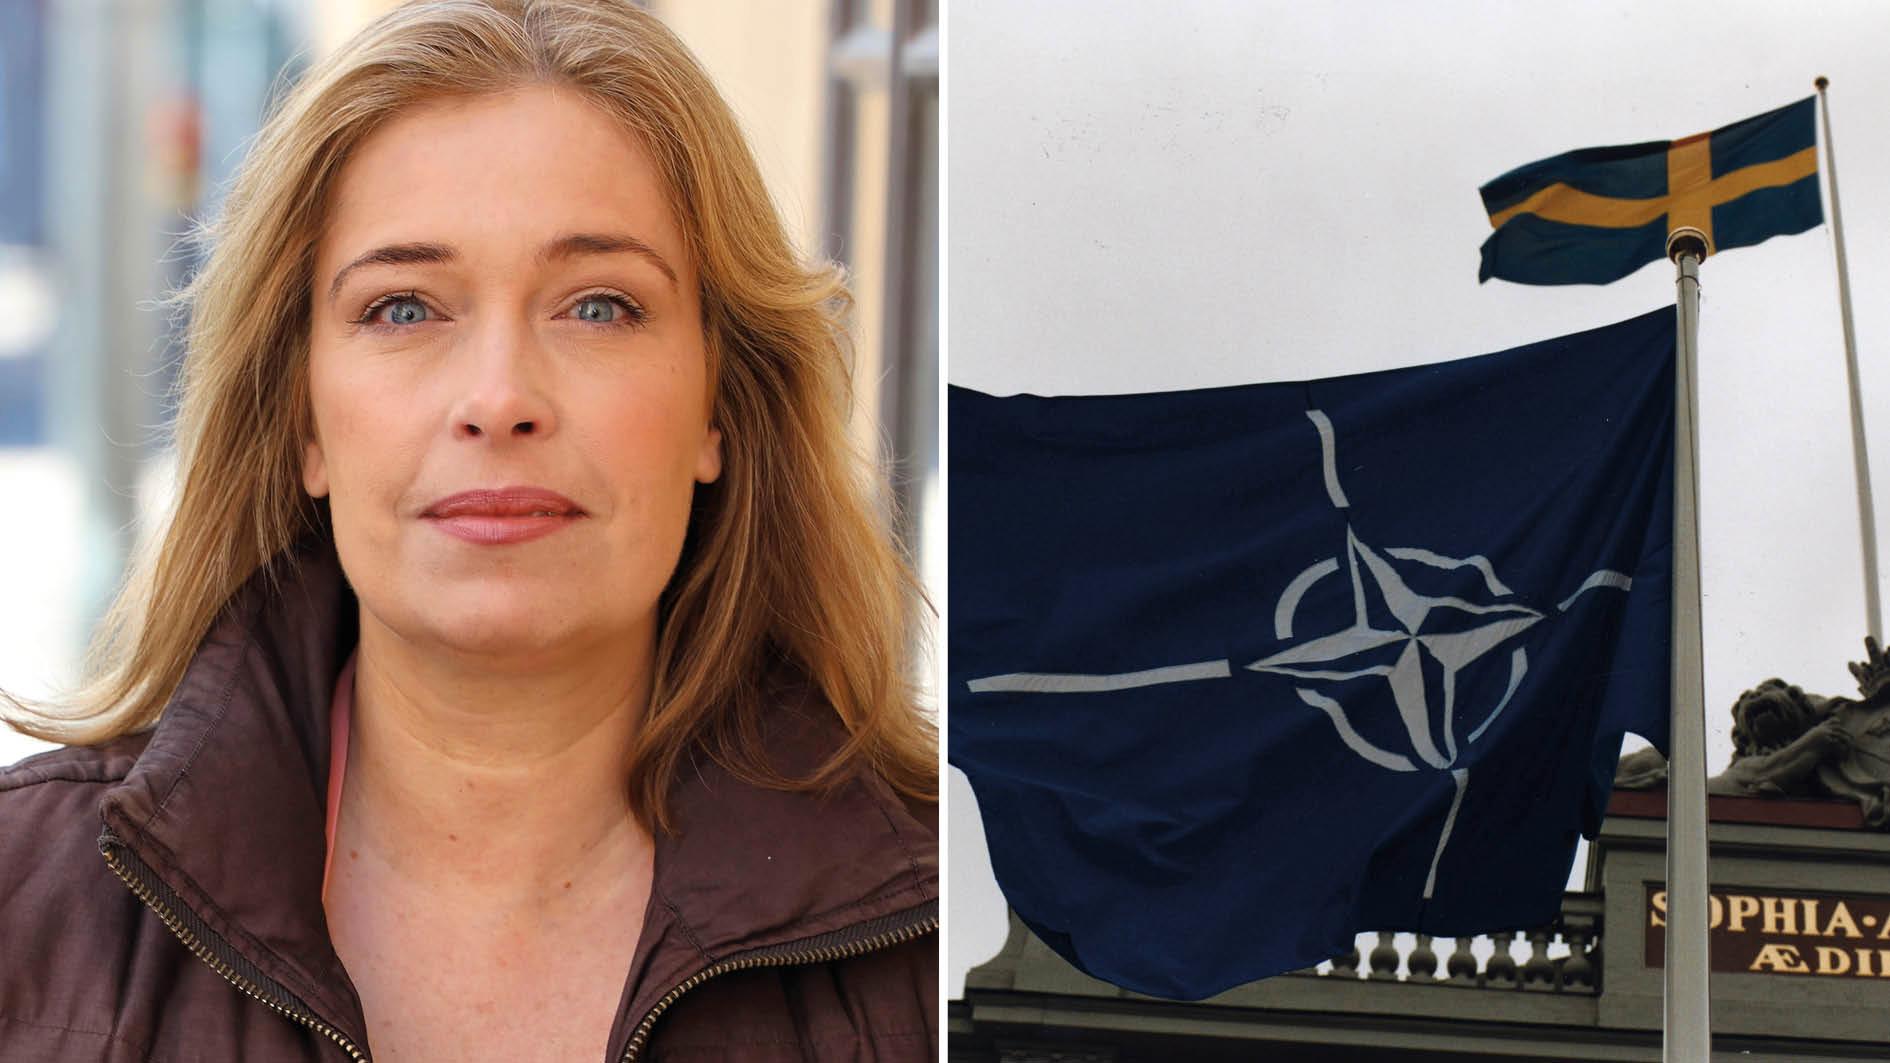 Natobeskedet var ett väntat beslut, men det var inte det utfall vi S-kvinnor kämpat för. I partiets interna diskussioner har vi valt att stå upp för vårt nej till Nato, skriver Annika Strandhäll.